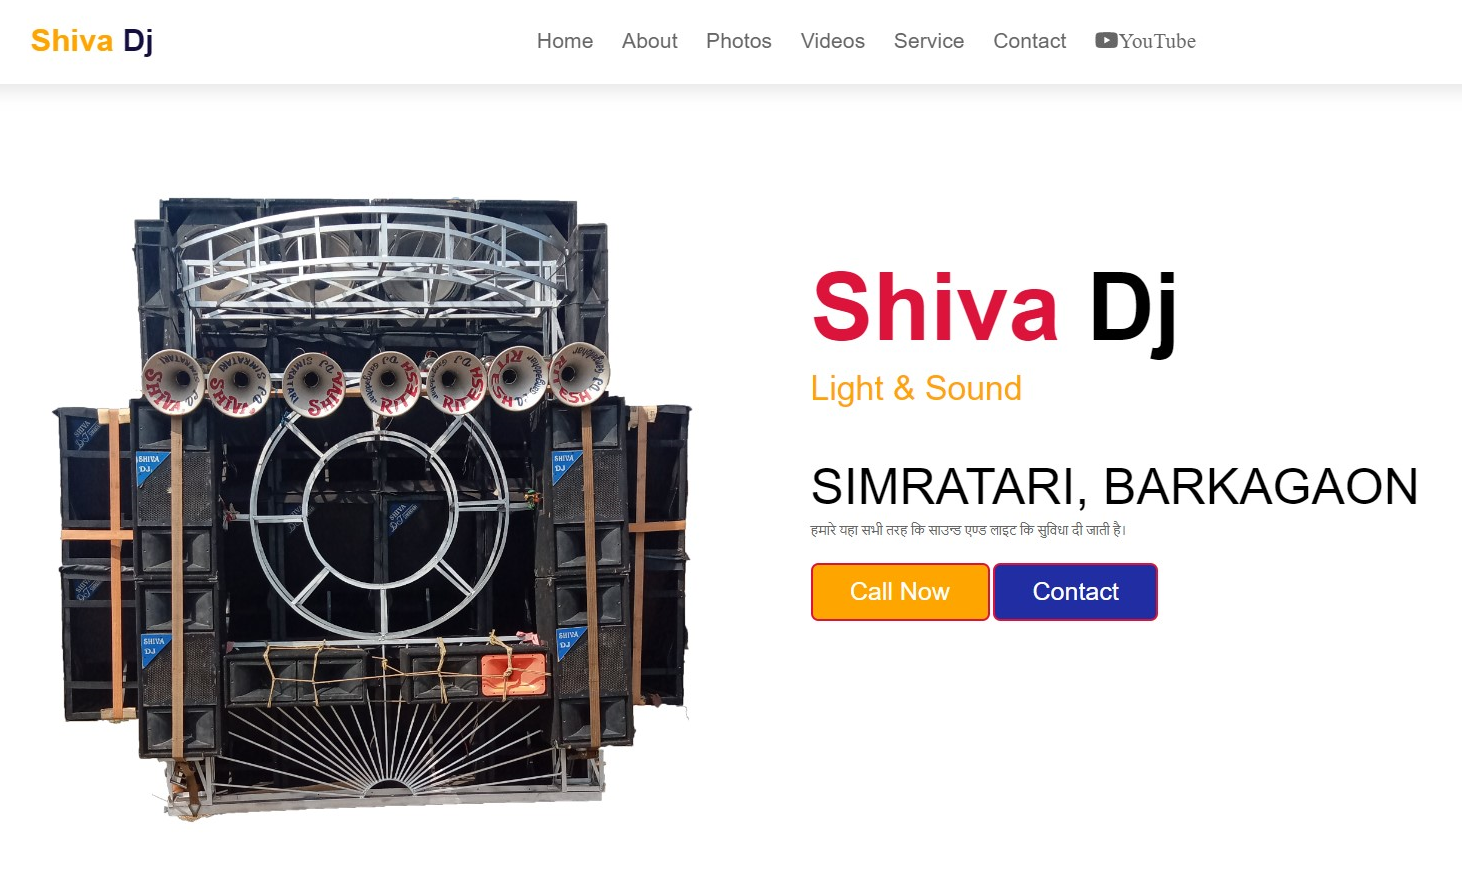 Shiva Dj simratari